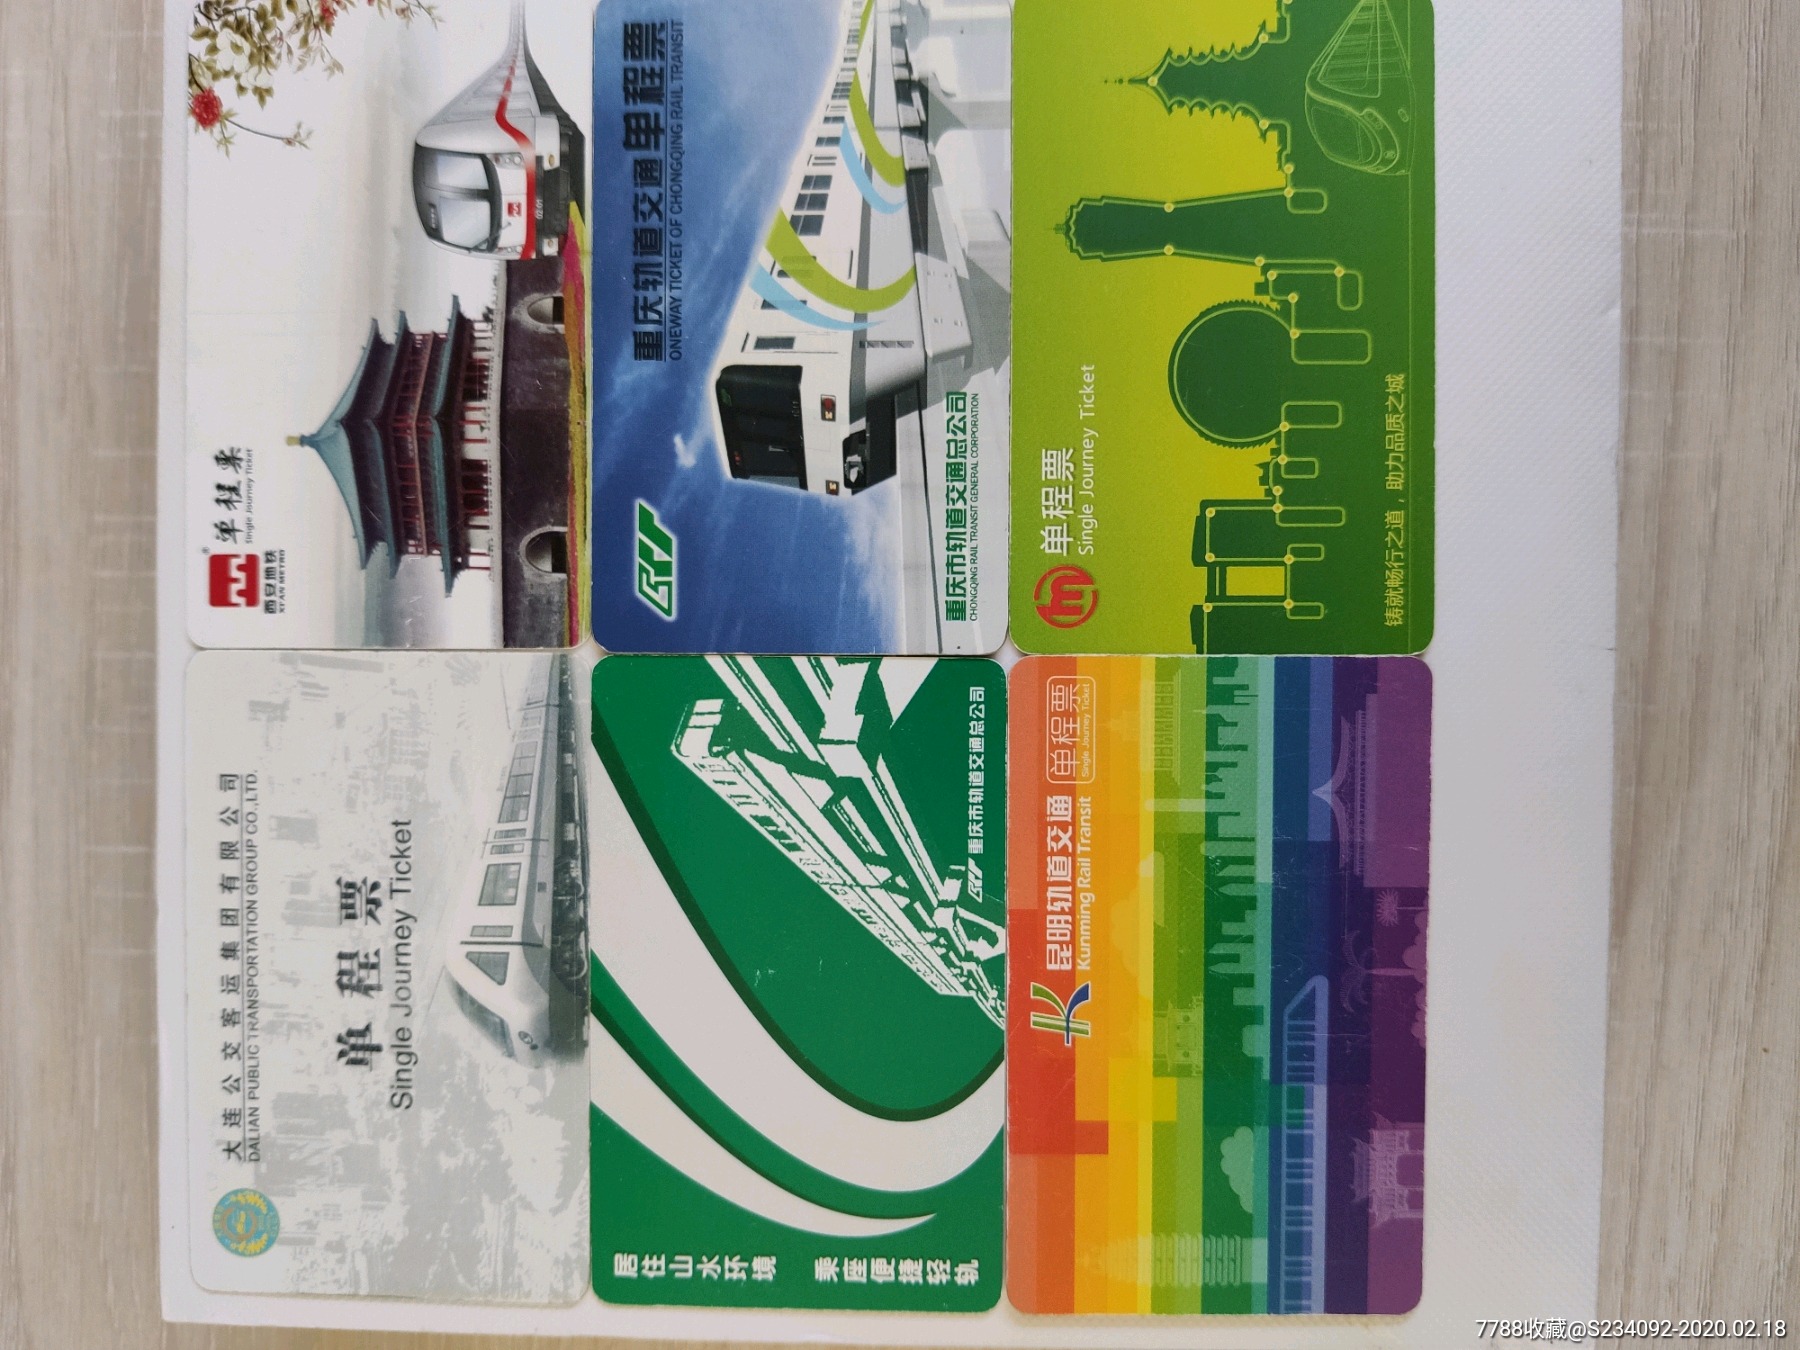 福州地铁单程票图片